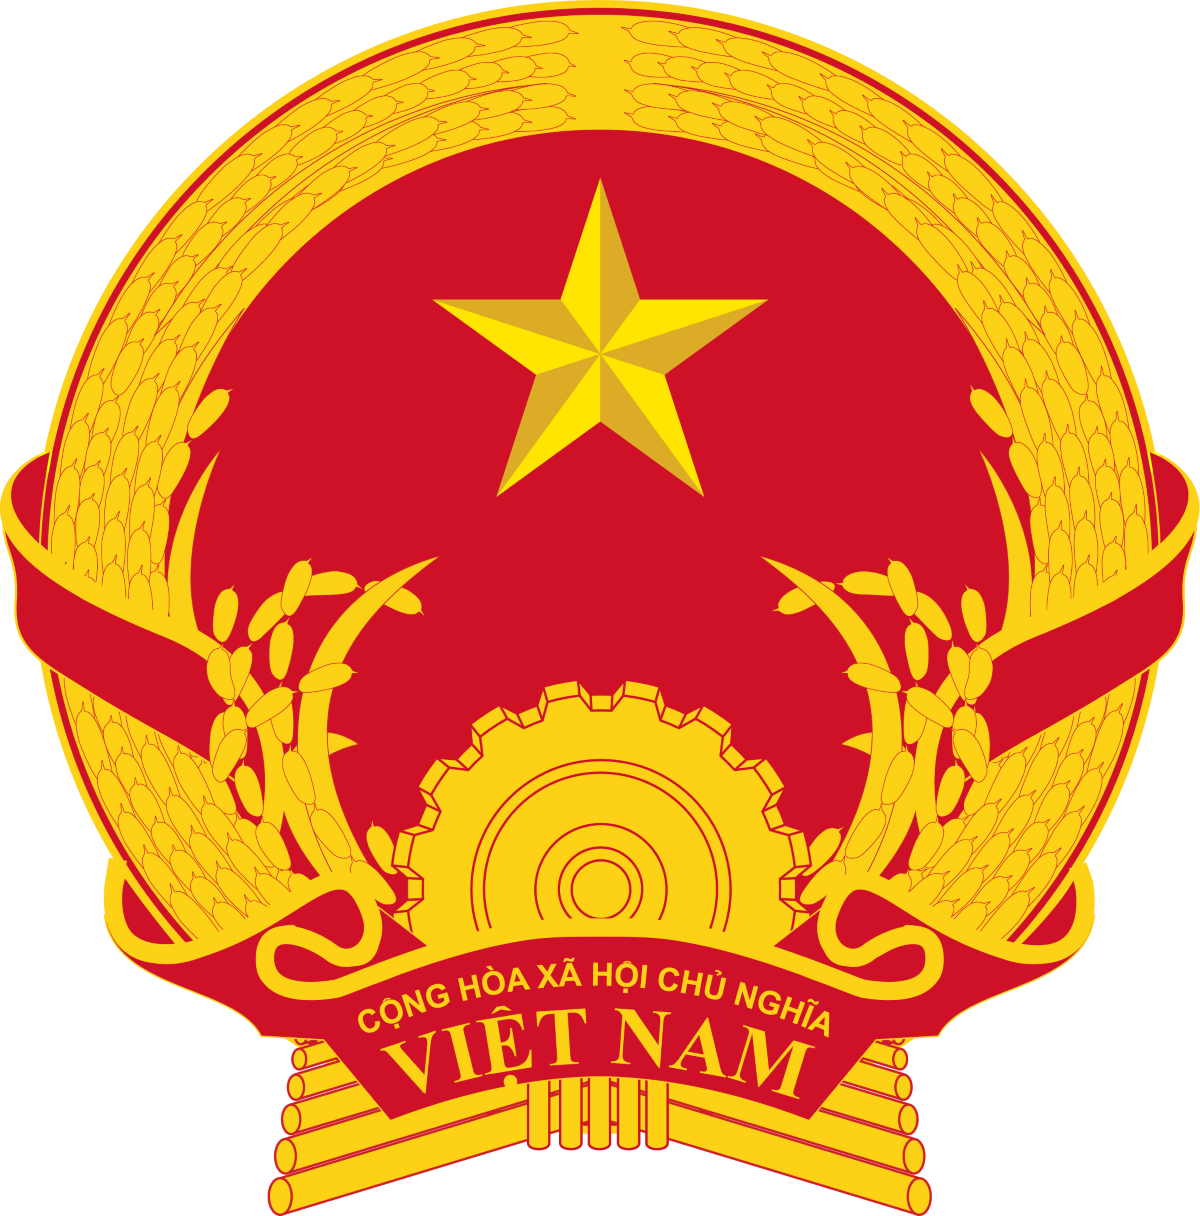 Quoc Huy Viet Nam